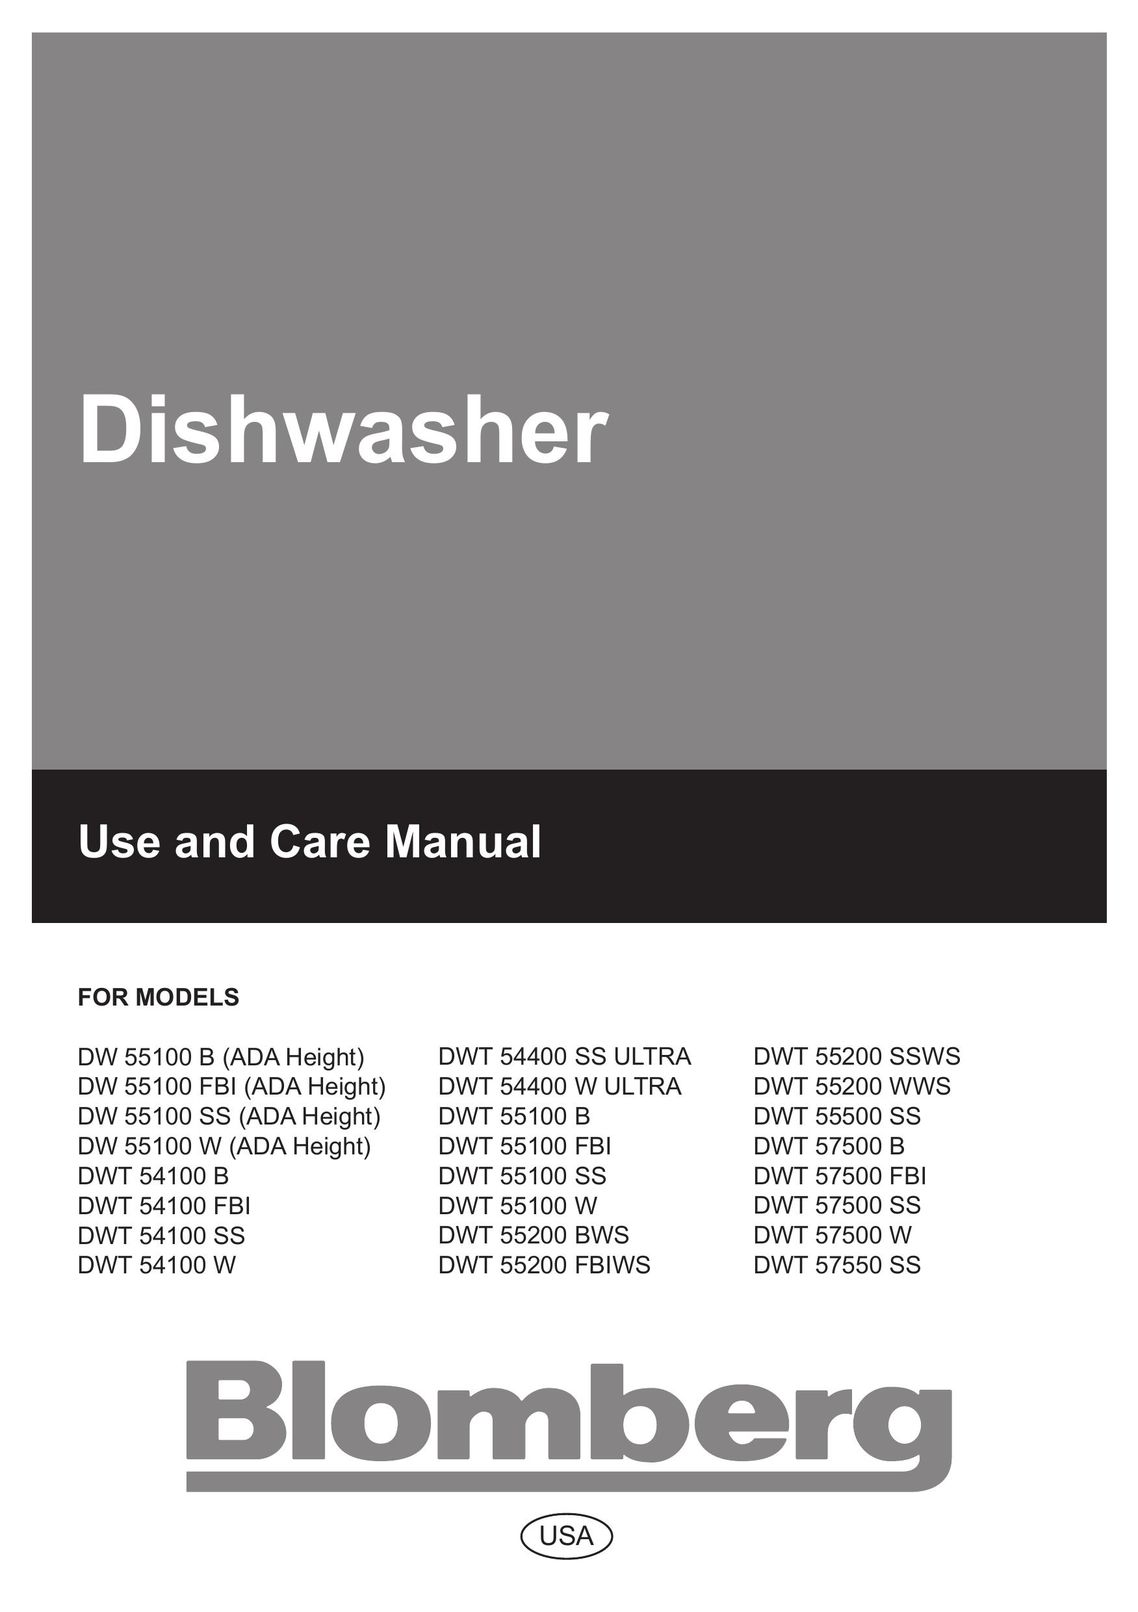 Blomberg DW 55100 W Dishwasher User Manual